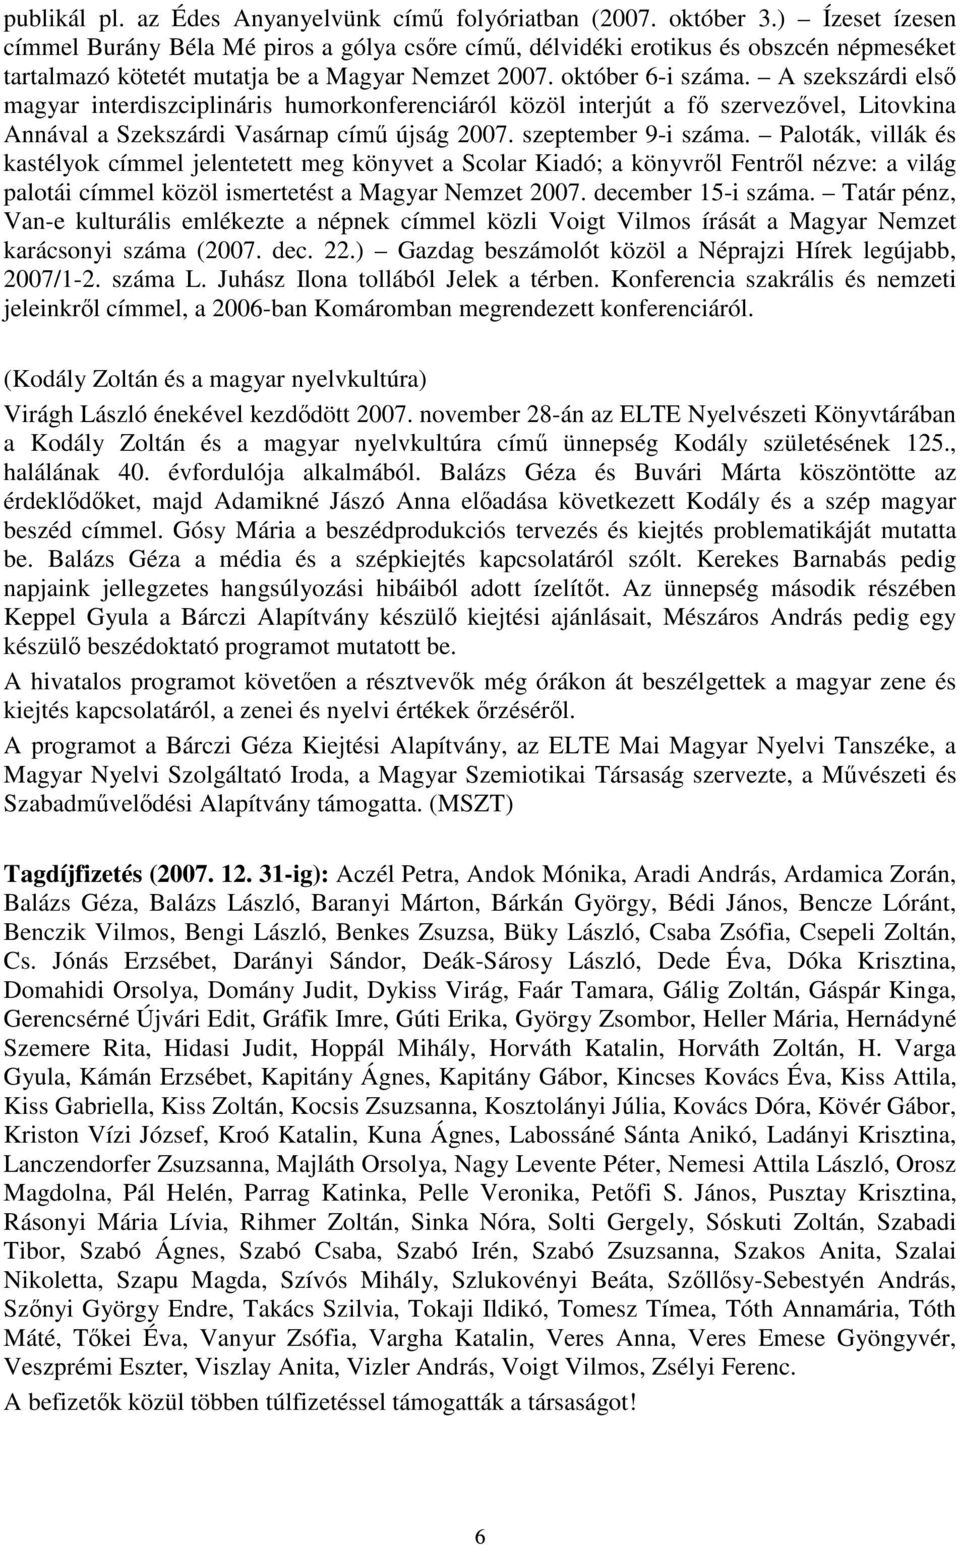 A szekszárdi első magyar interdiszciplináris humorkonferenciáról közöl interjút a fő szervezővel, Litovkina Annával a Szekszárdi Vasárnap című újság 2007. szeptember 9-i száma.